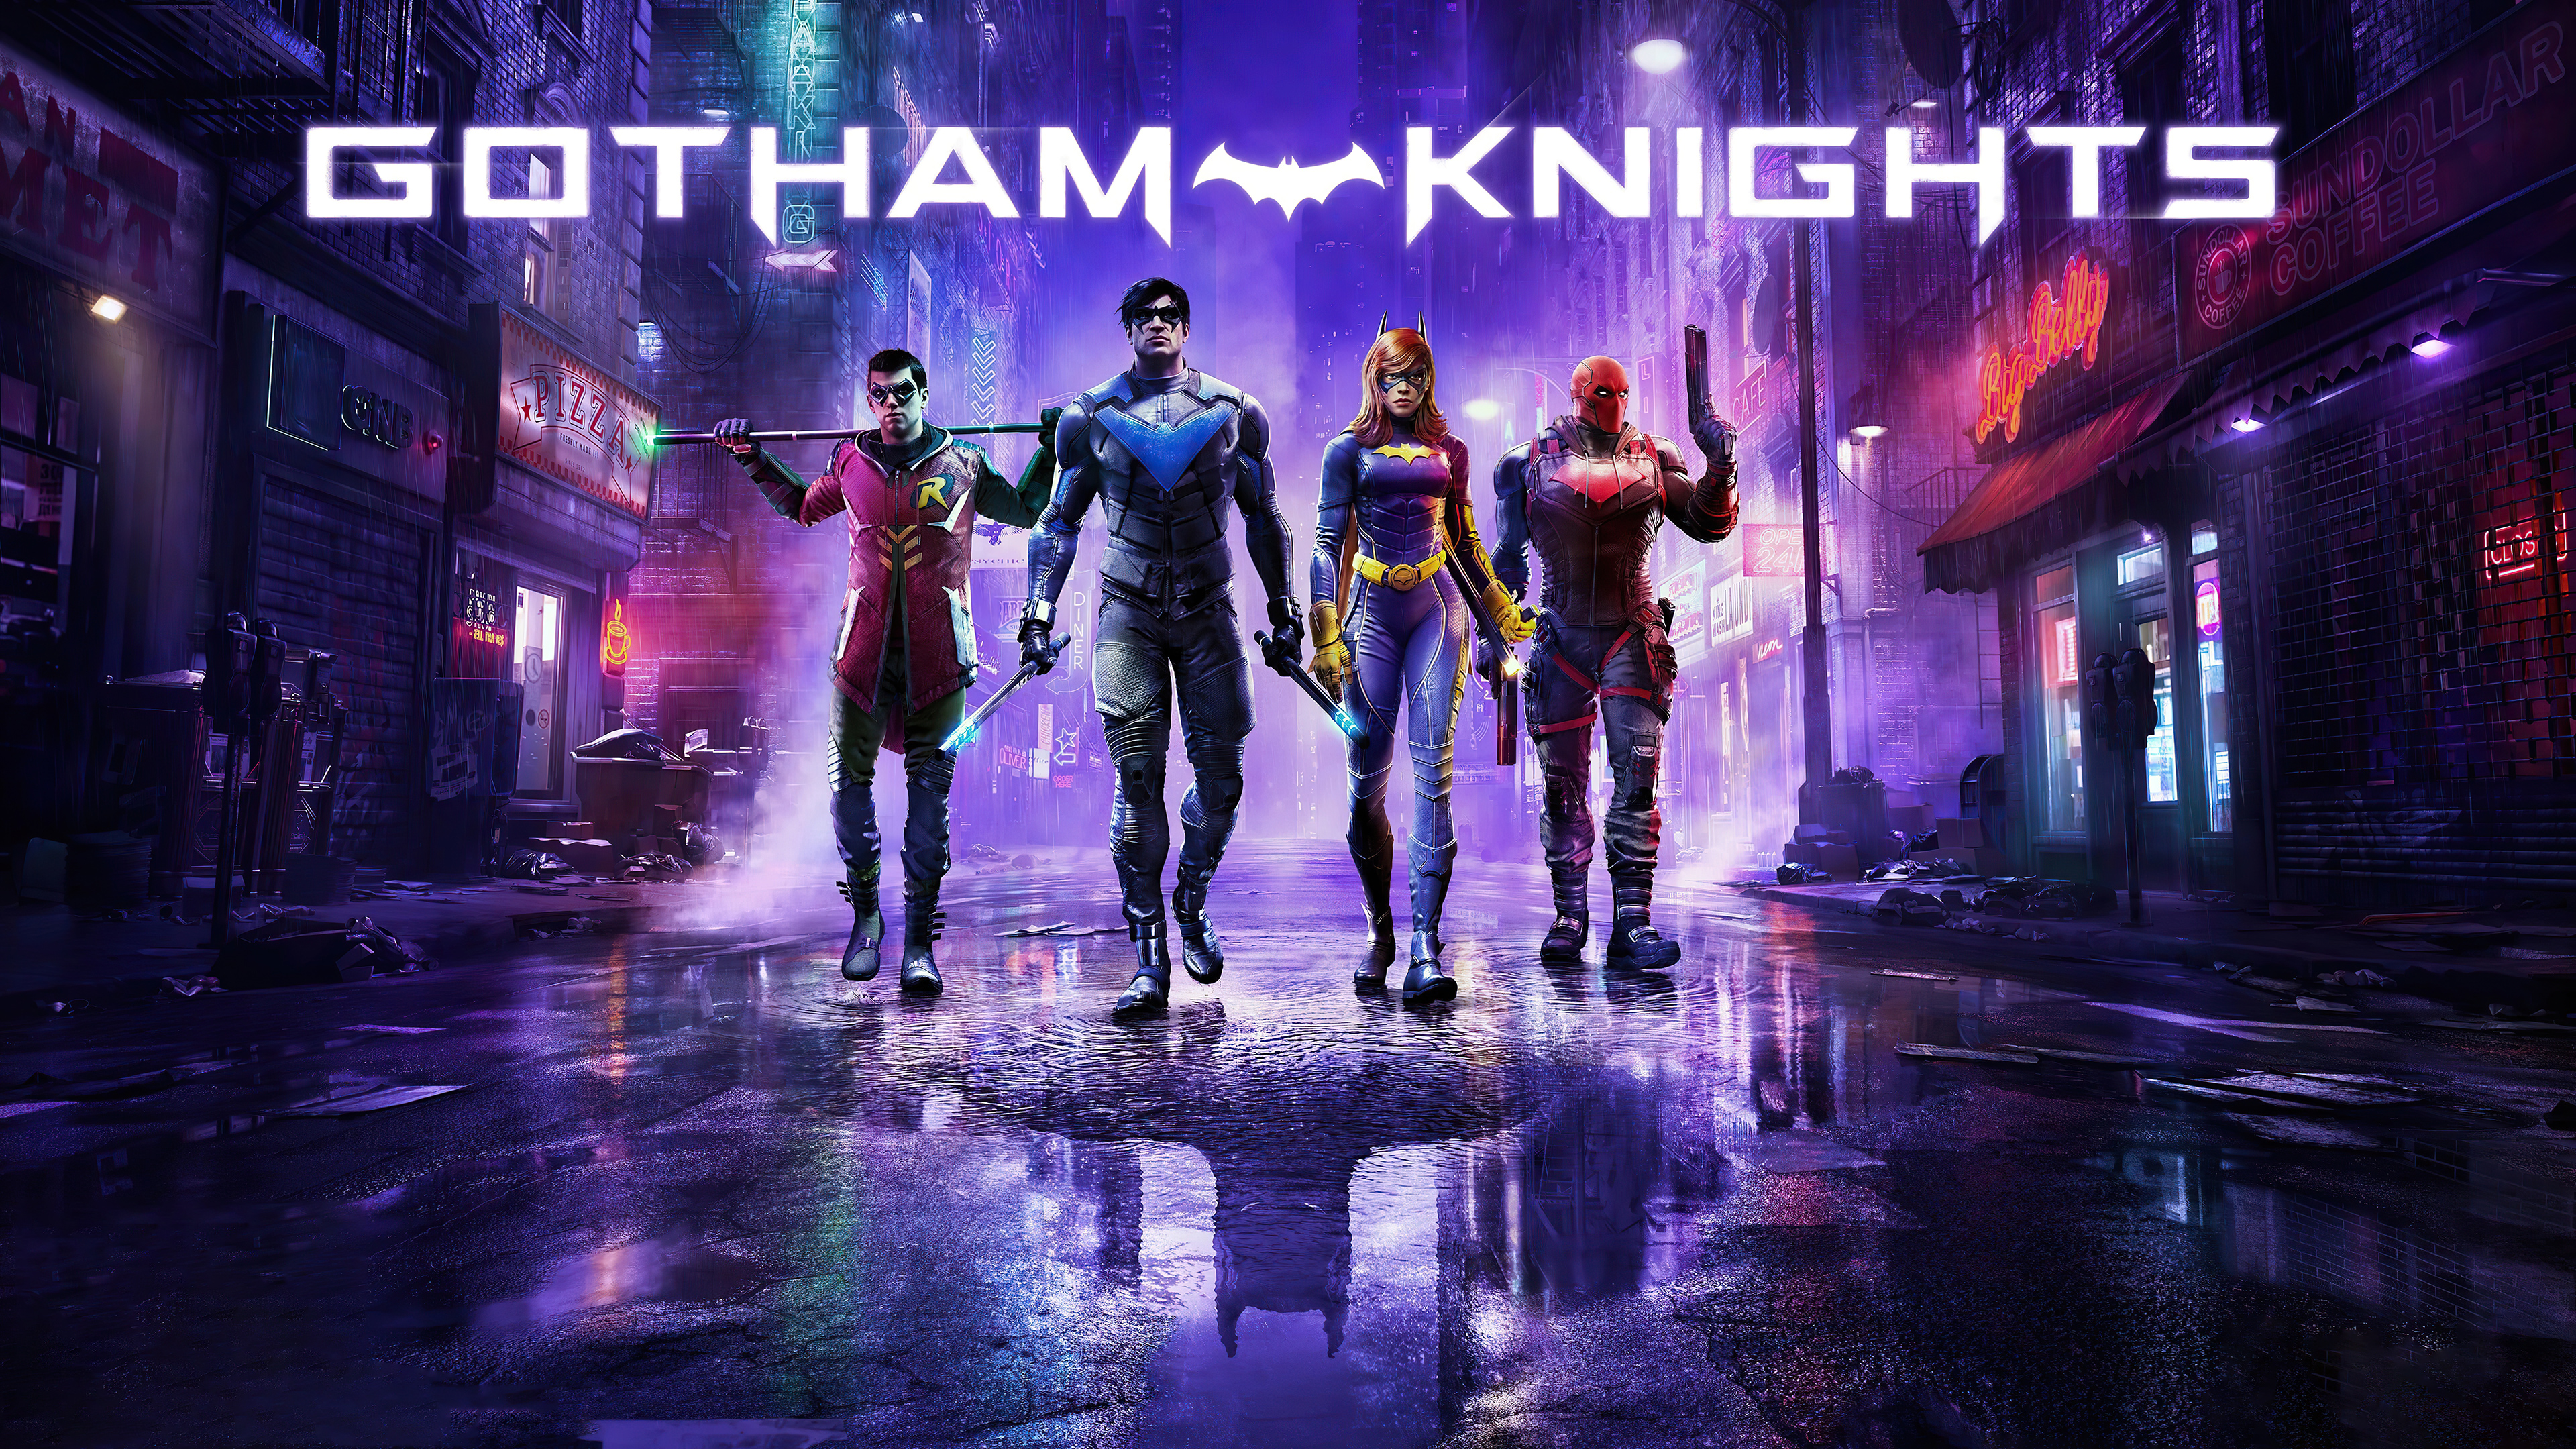 Descargar fondos de escritorio de Gotham Knights HD